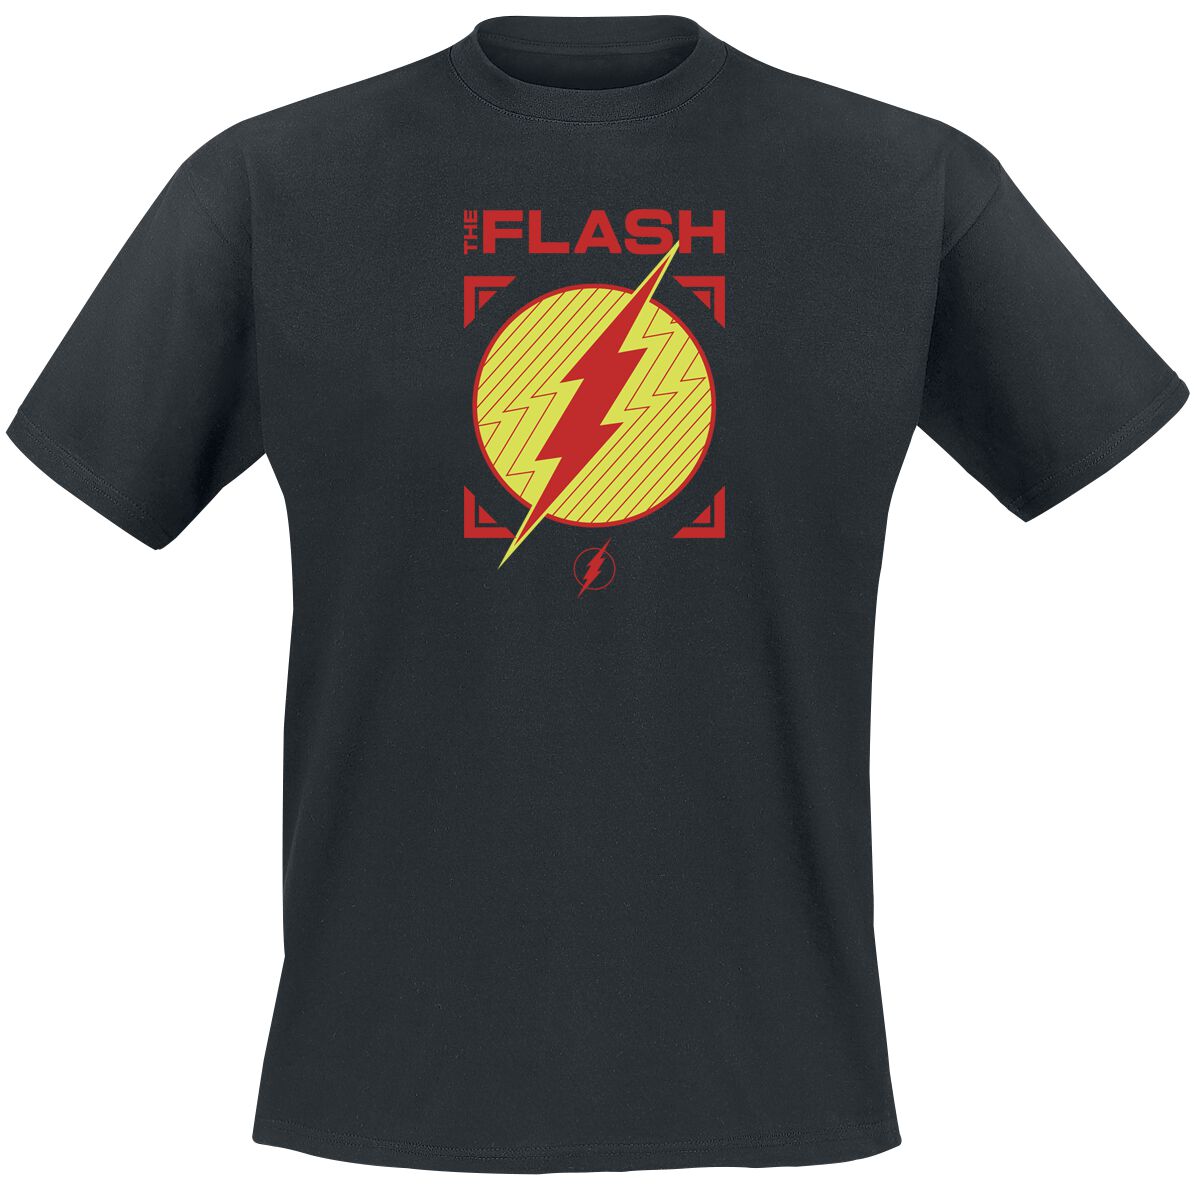 The Flash - DC Comics T-Shirt - Flash - Central City All Stars - S bis XXL - für Männer - Größe S - schwarz  - EMP exklusives Merchandise!